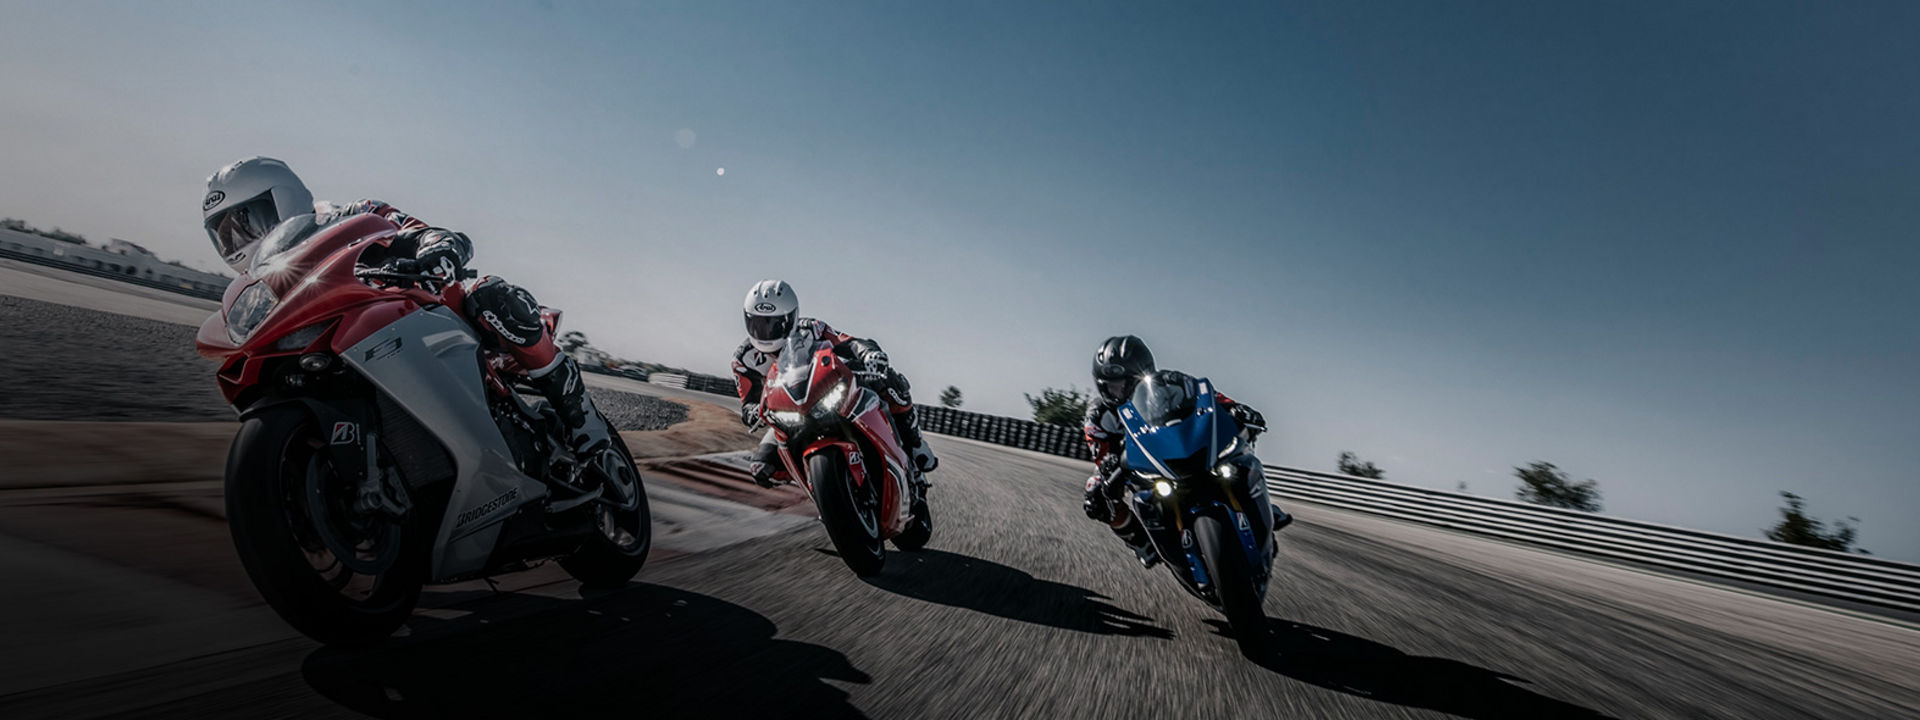 L'immagine mostra tre motociclisti con pneumatici Bridgestone in curva ad alta velocità su una pista da corsa.